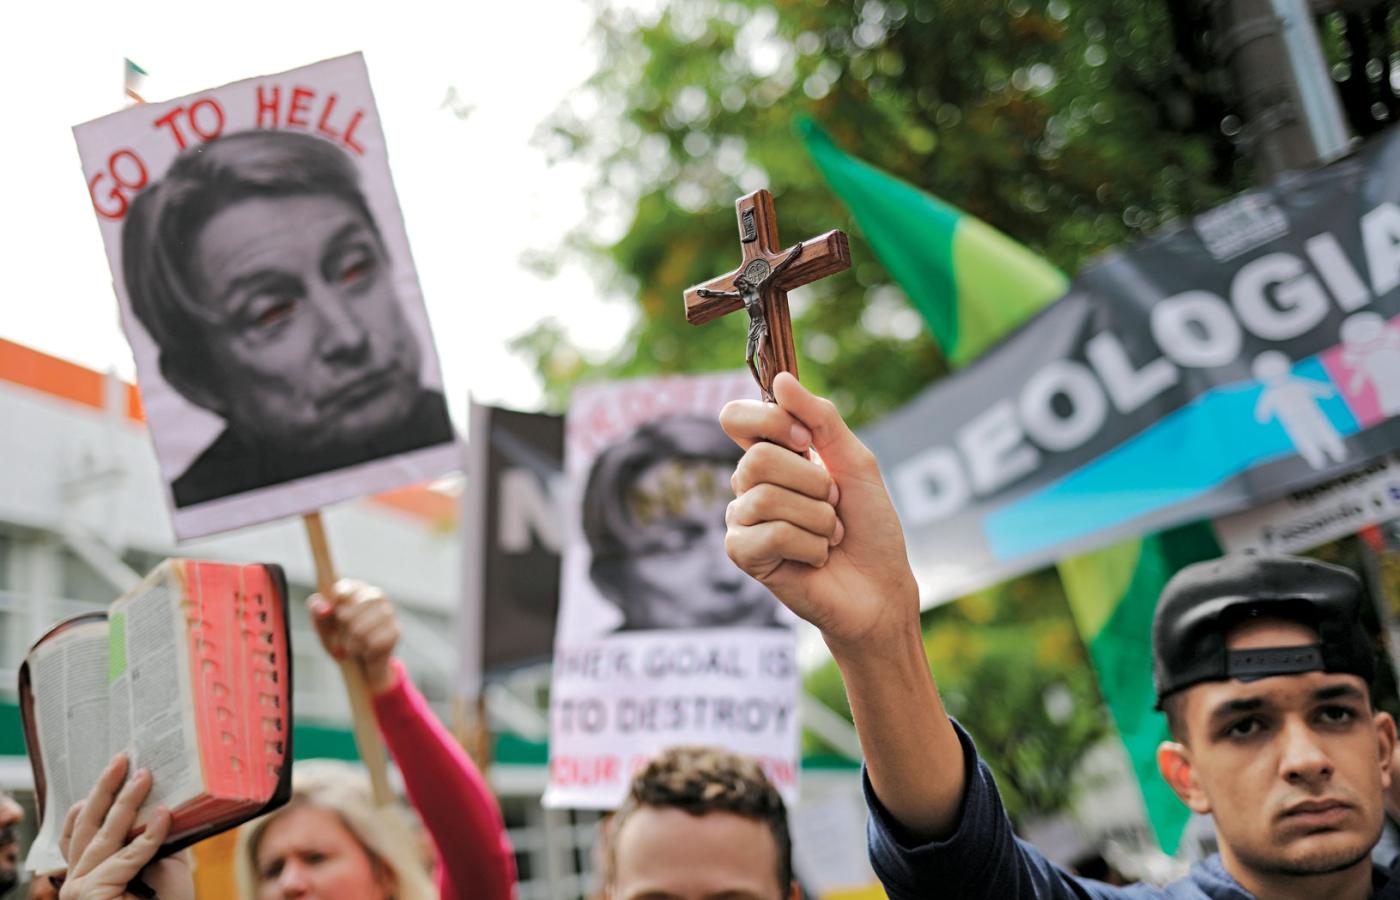 W São Paulo, jak w Polsce, na ulice wylegli przeciwnicy „ideologii gender”. Pod znakiem krzyża palą kukły i każą „Iść do piekła” amerykańskiej filozofce Judith Butler, która przyjechała z wykładami.